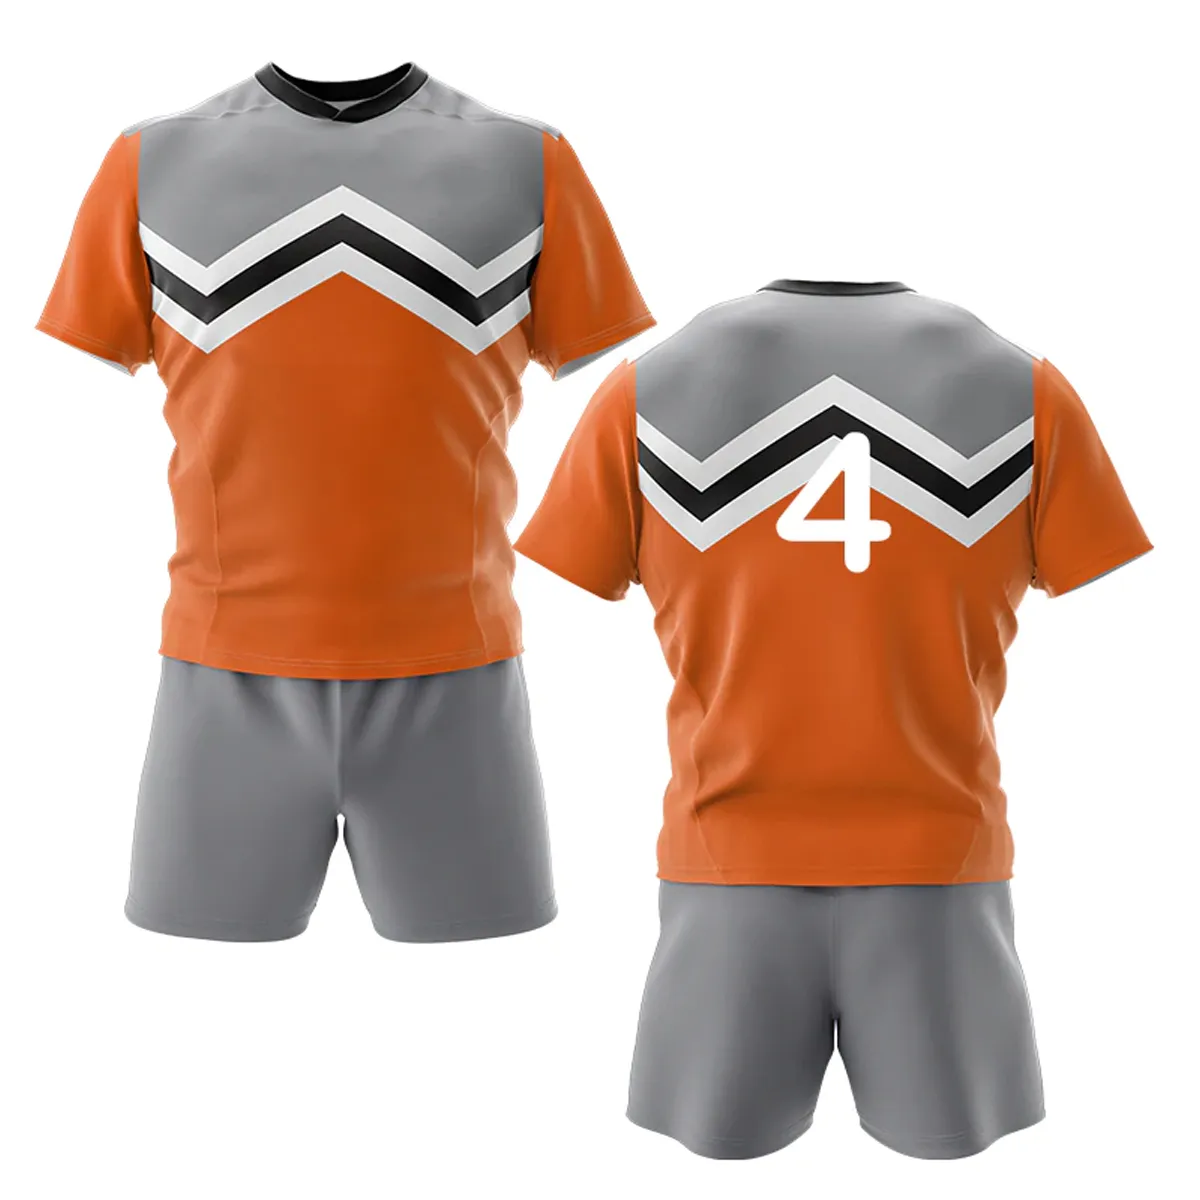 Il commercio all'ingrosso di sport personalizza l'uniforme di Rugby dell'uniforme di Rugby degli stili automatici delle maniche lunghe con l'imballaggio su ordinazione.